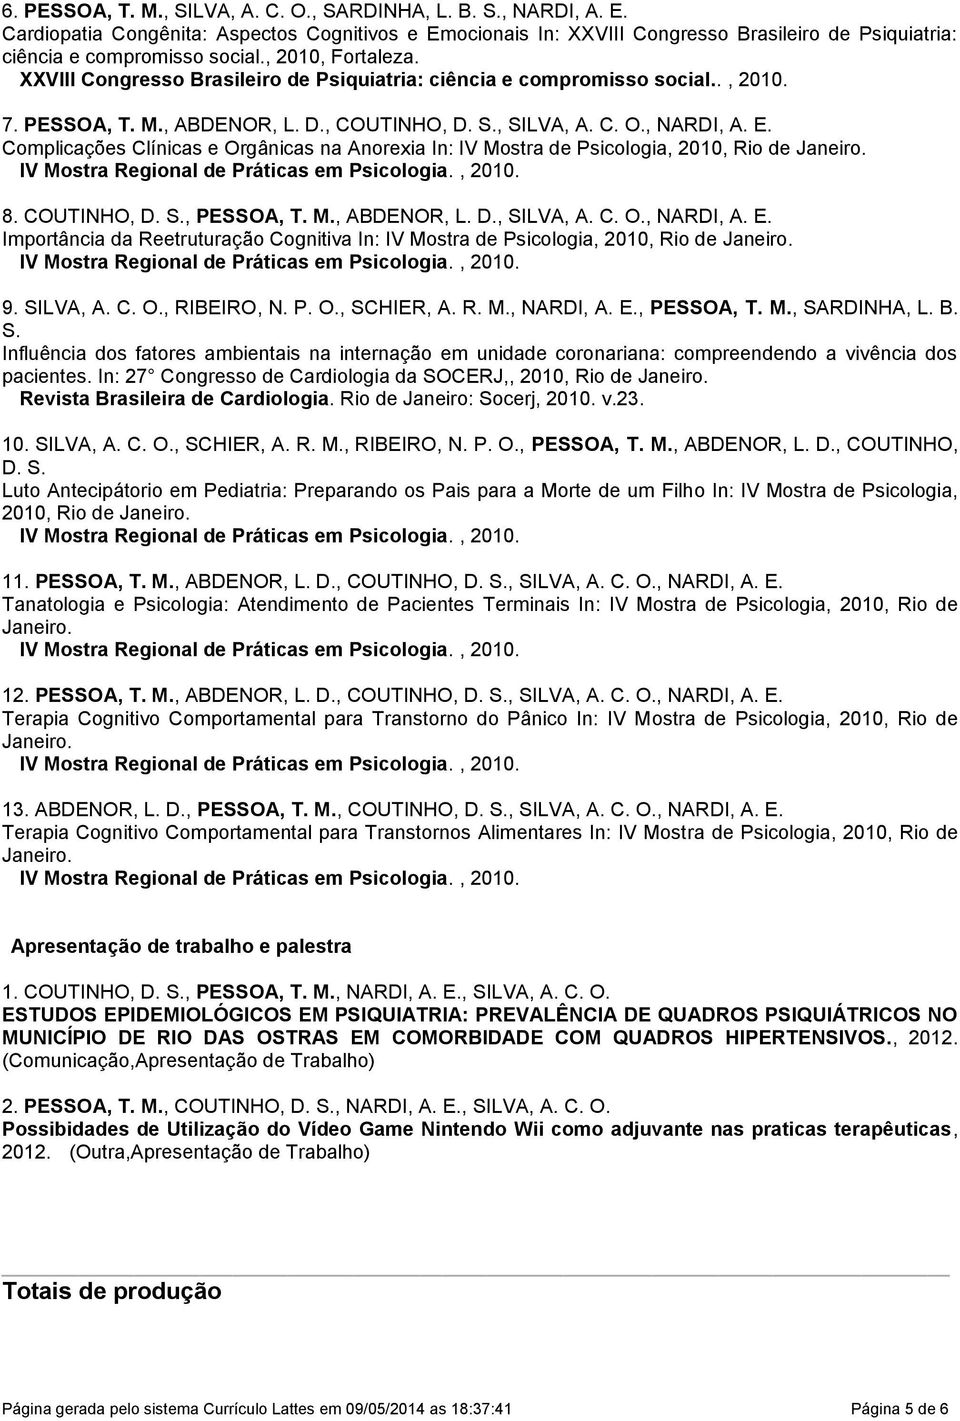 XXVIII Congresso Brasileiro de Psiquiatria: ciência e compromisso social.., 2010. 7. PESSOA, T. M., ABDENOR, L. D., COUTINHO, D. S., SILVA, A. C. O., NARDI, A. E.